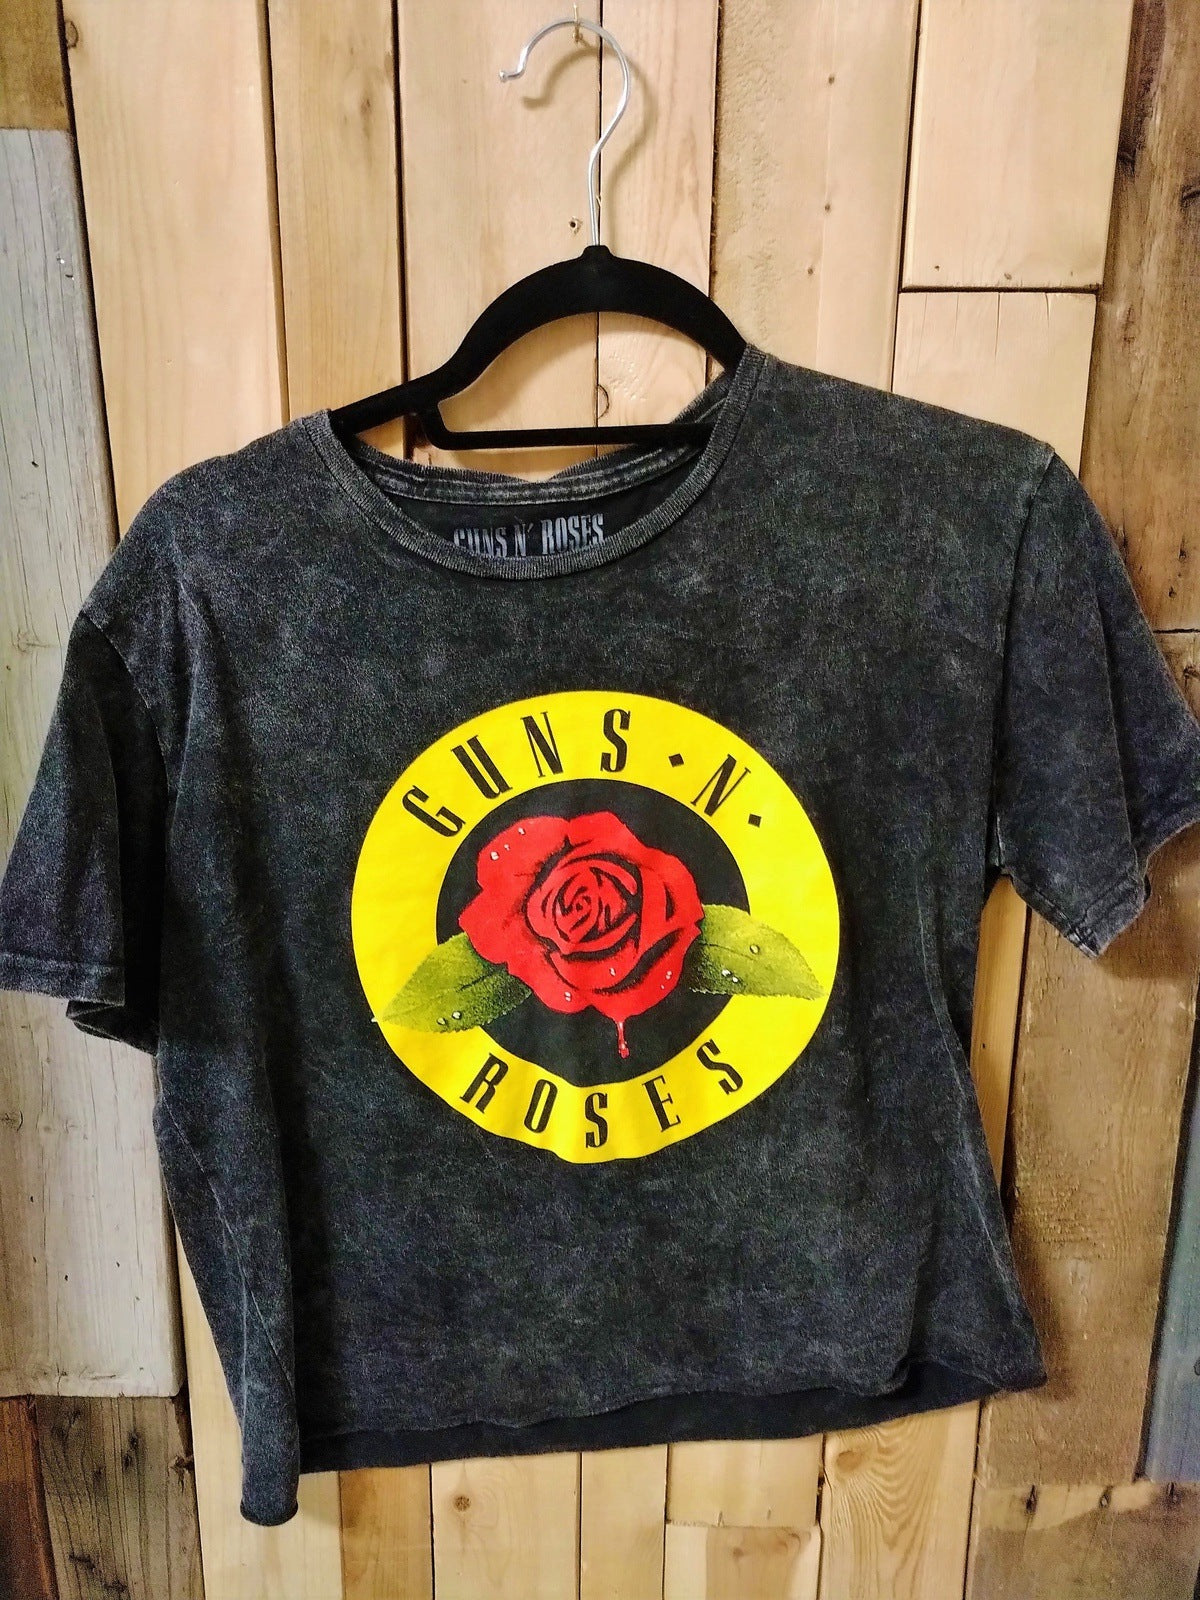 Guns N Roses Women's Large Tee Shirt